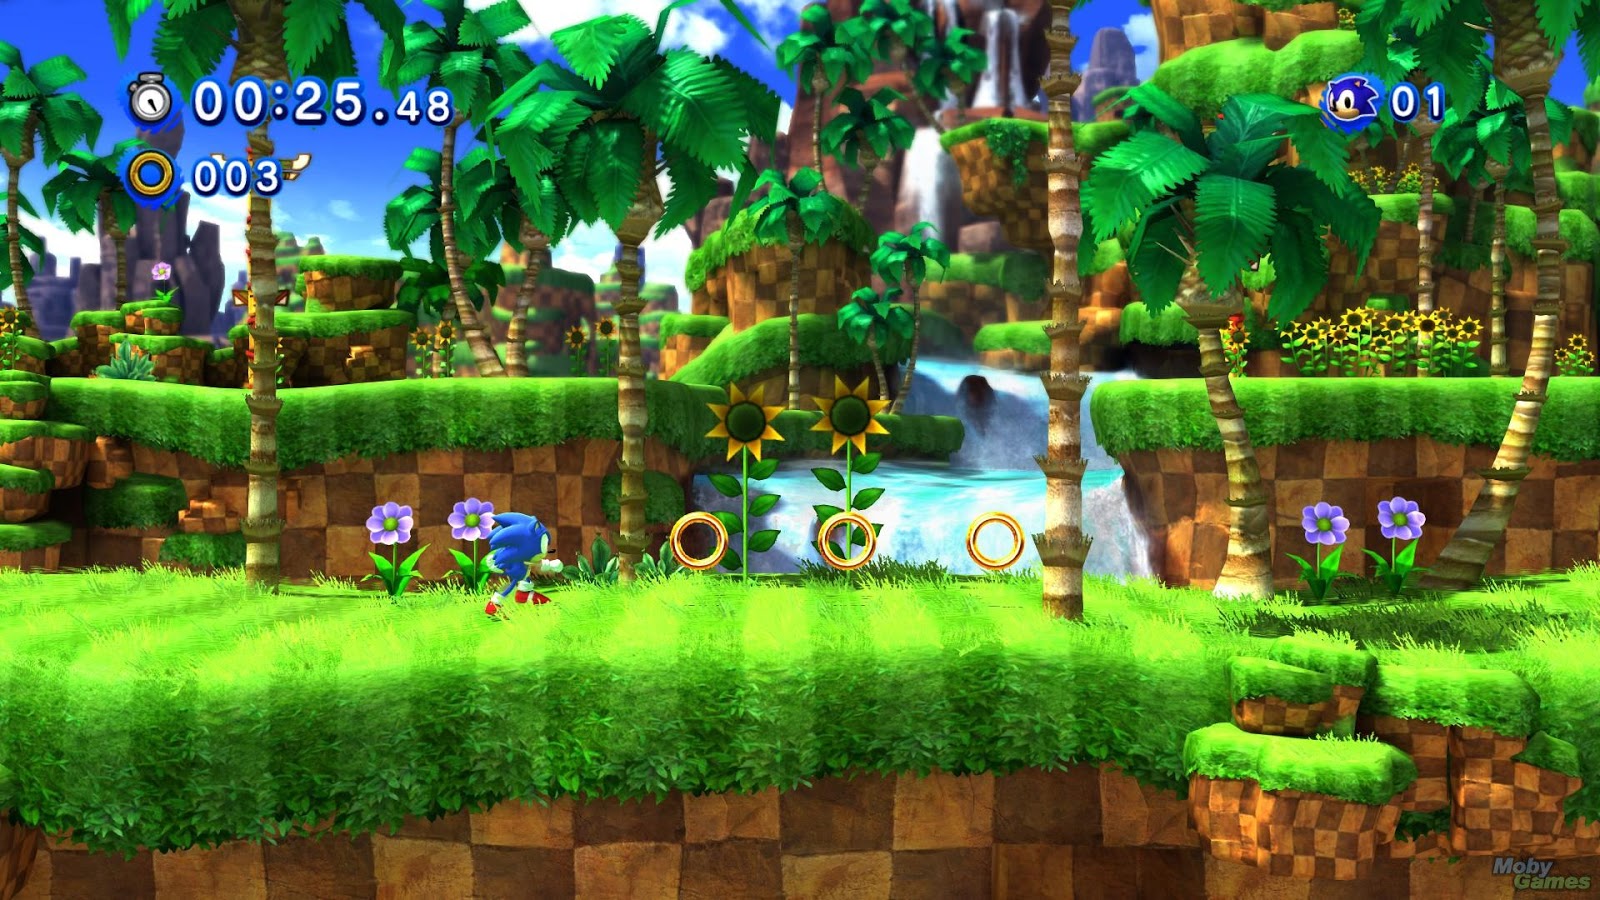 Jogos Xbox 360 transferência de Licença Mídia Digital - Sonic Unleashed